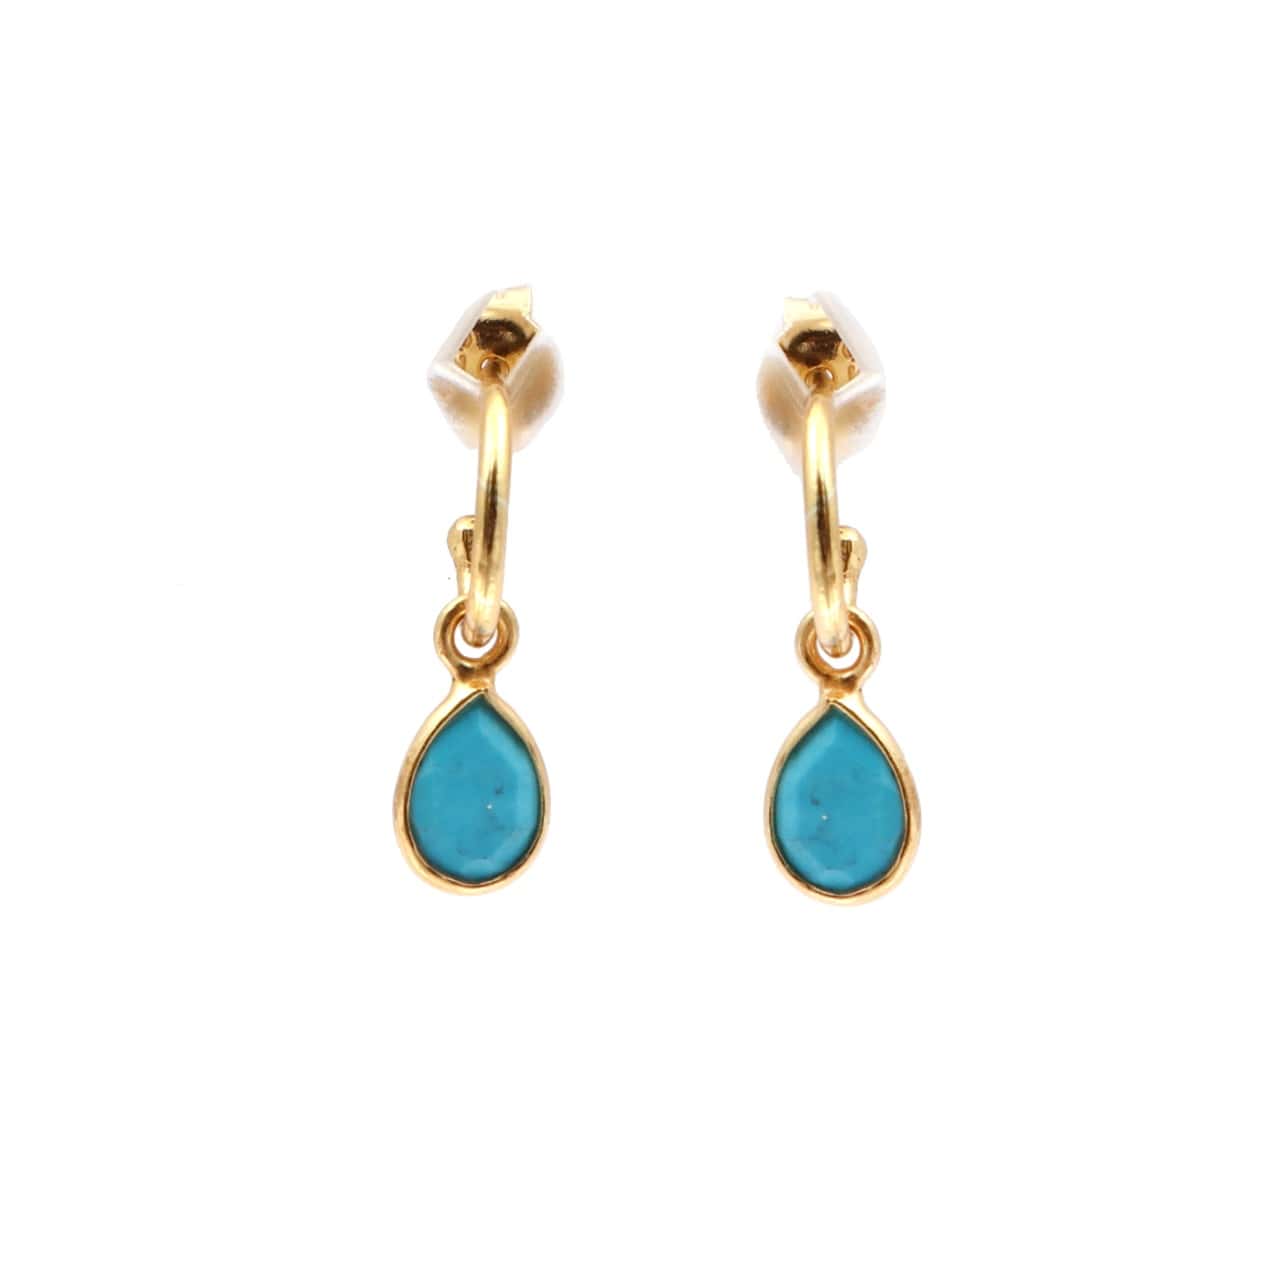 Petite Teardrop Earrings/18K Yellow Gold & Turquoise - infinityXinfinity.co.uk